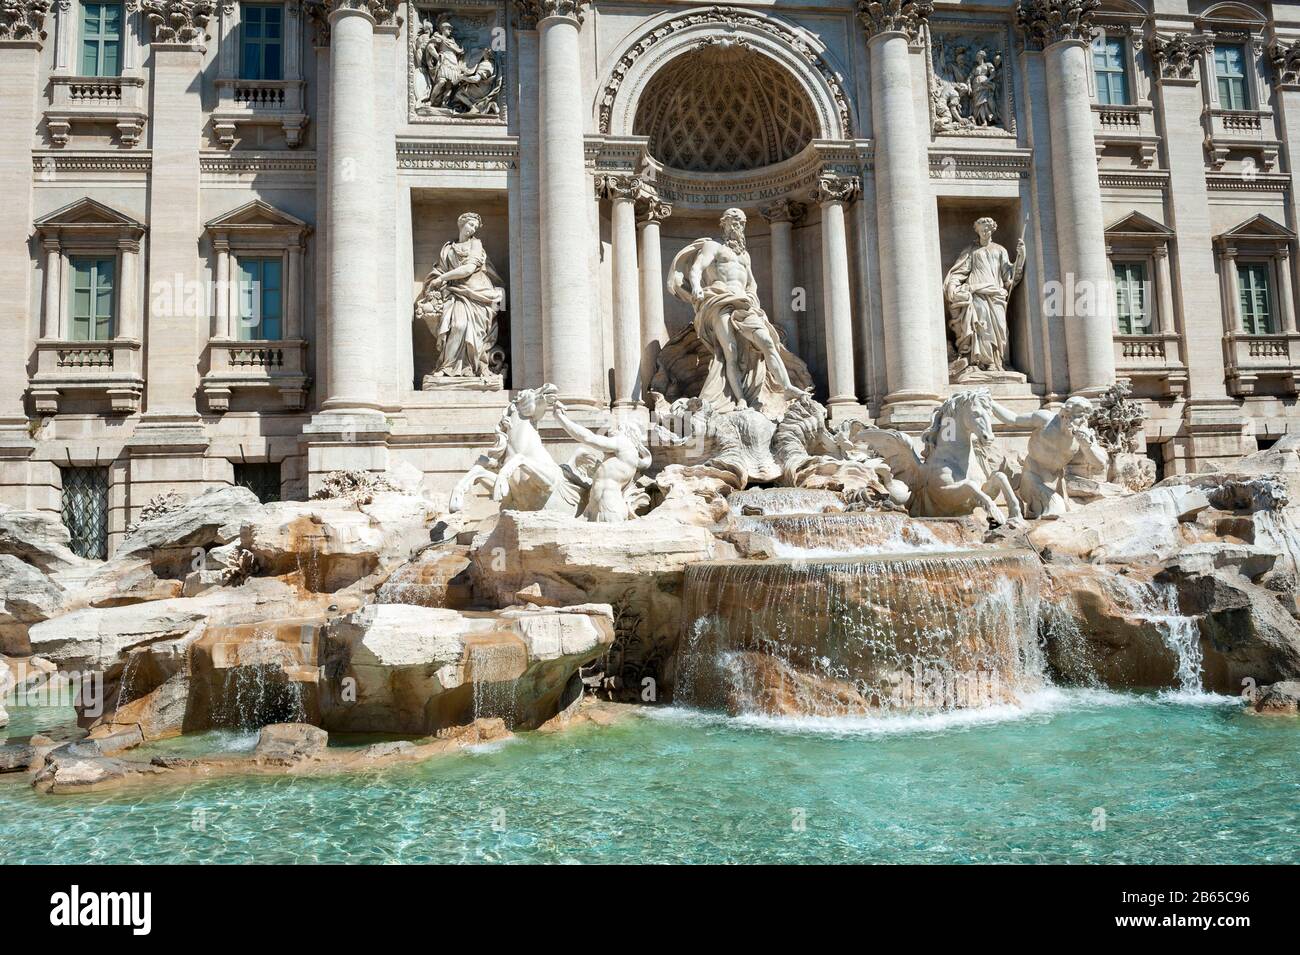 Vue ensoleillée sur la fontaine de Trevi depuis les eaux de la piscine vide sous le ciel bleu de Rome, Italie Banque D'Images